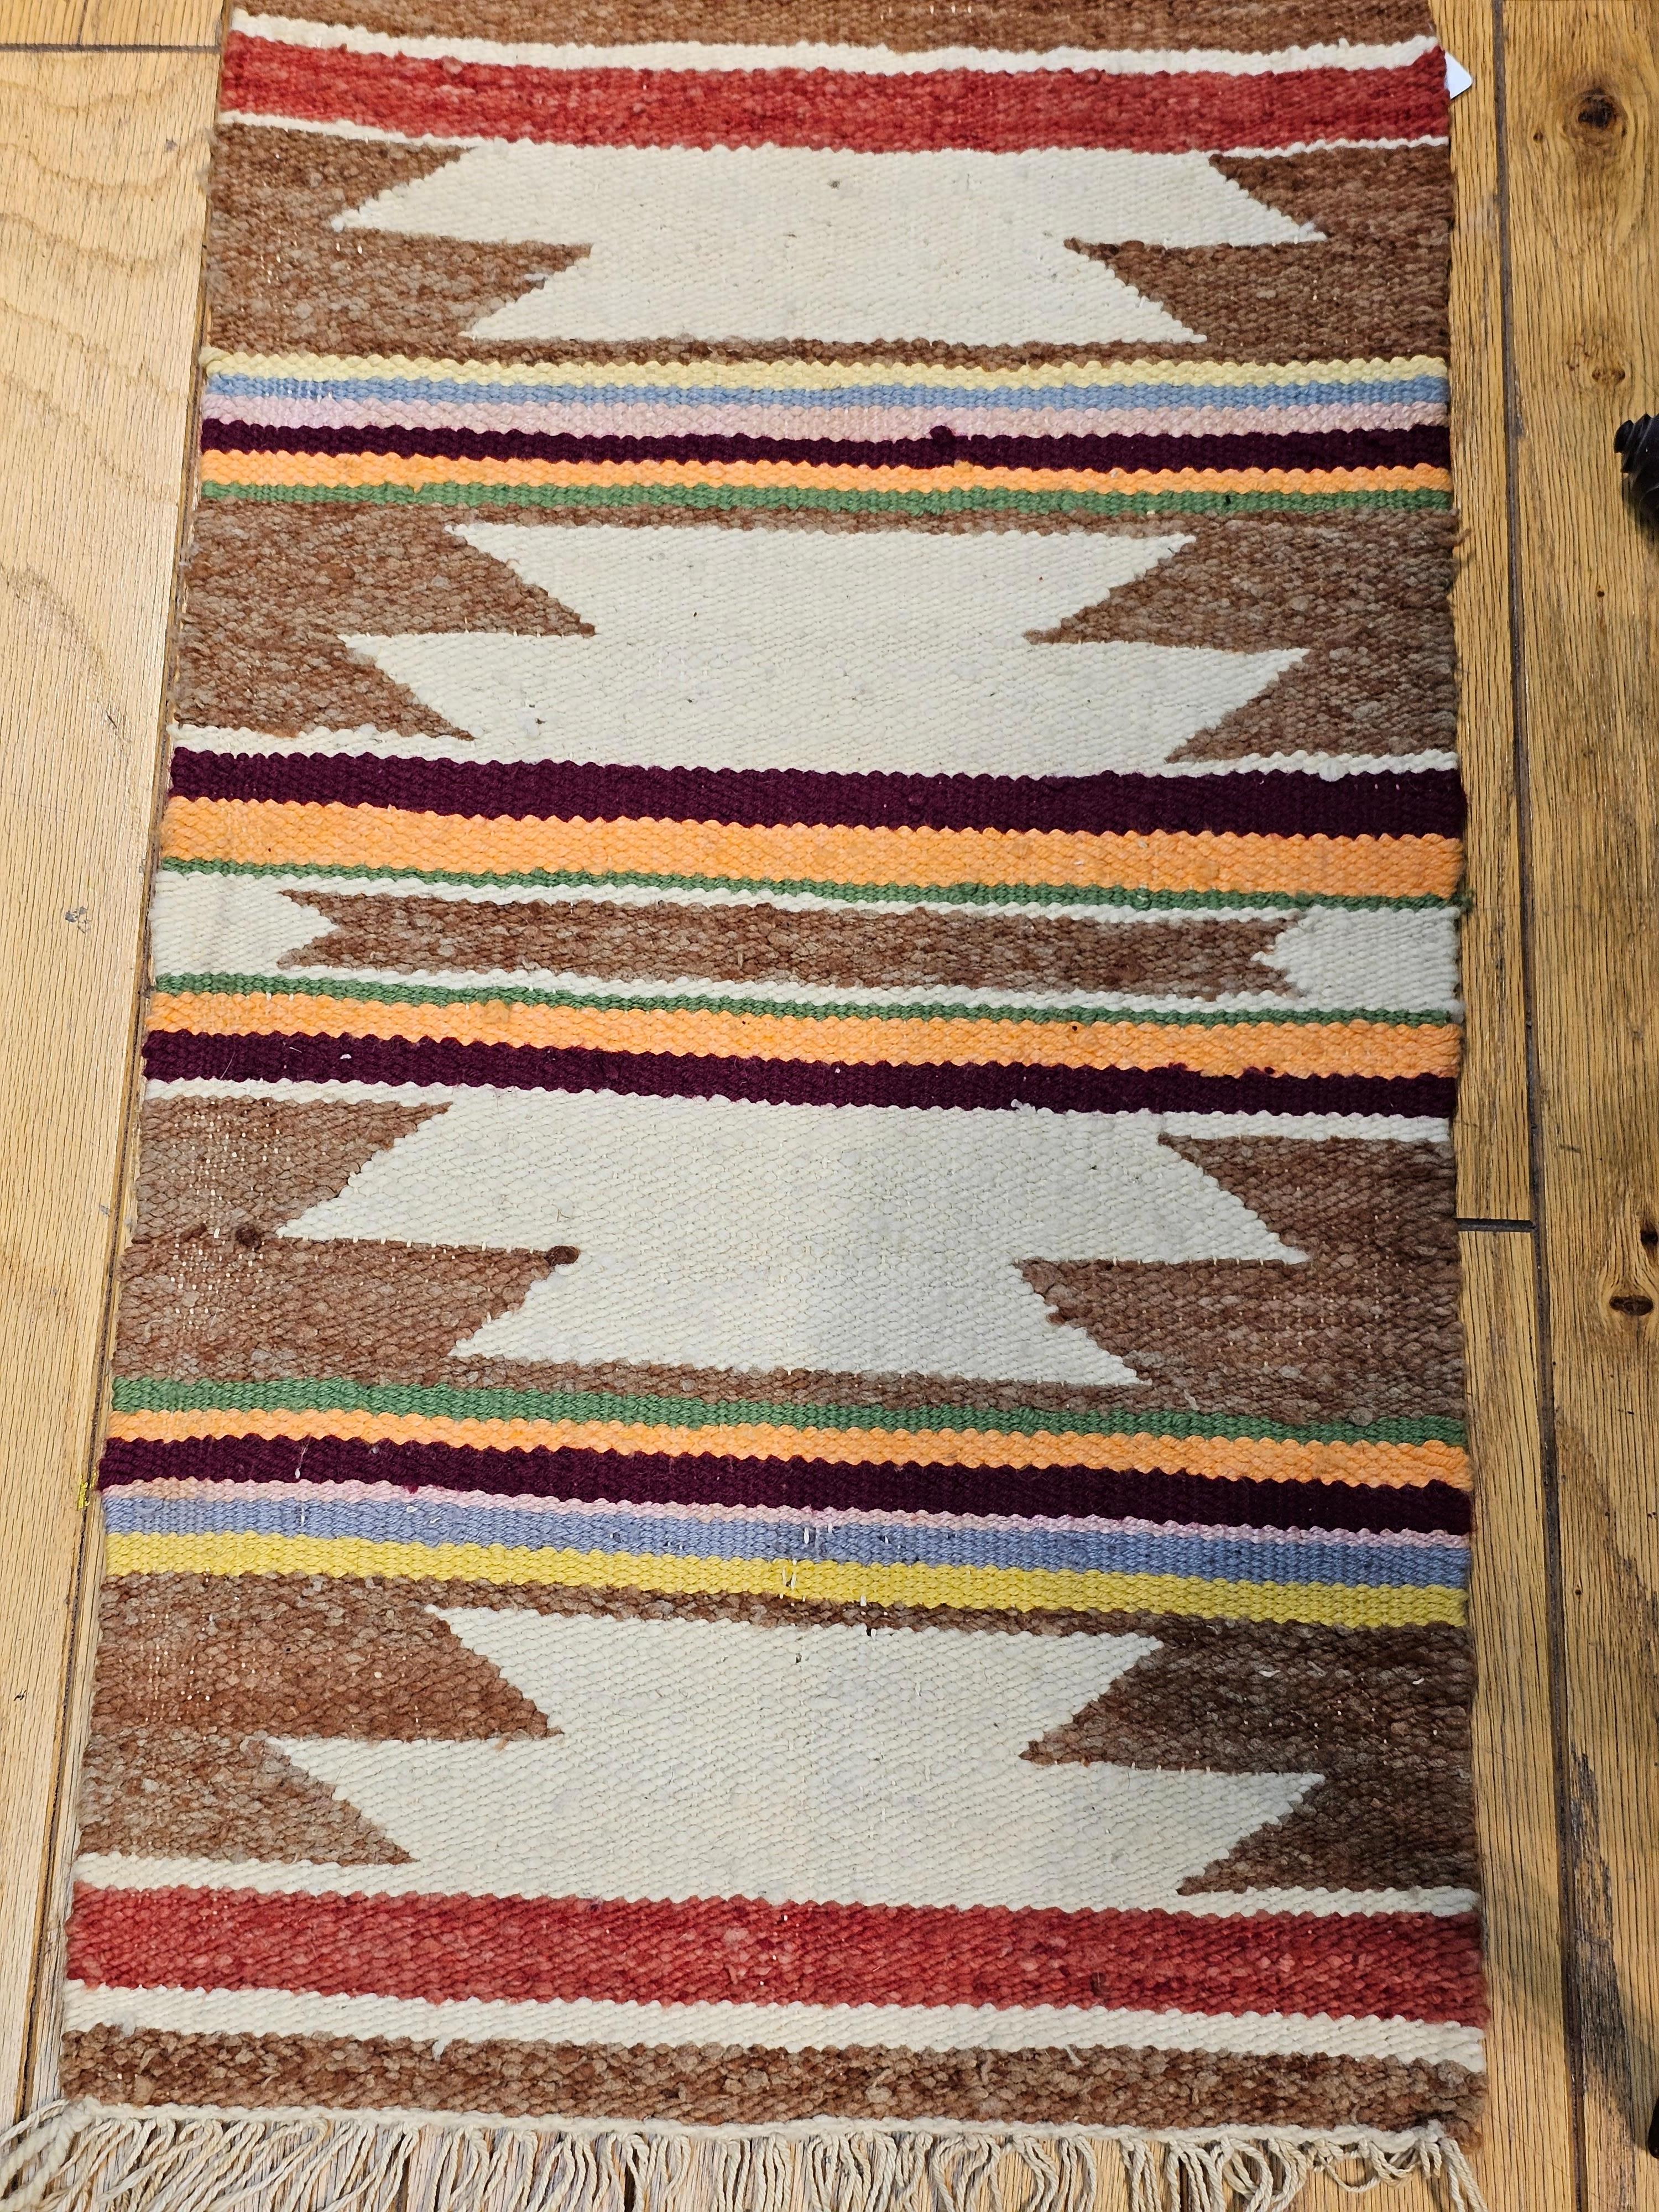 Vintage amerikanischer Navajo Teppich in einem breiten Bandmuster in Elfenbein, Rost, lila und gelben Farben aus dem späten 2oth Jahrhundert.  Navajo-Teppiche sind in der Regel flach gewebt, wobei der Teppichkörper aus Wolle und das Grundgewebe in